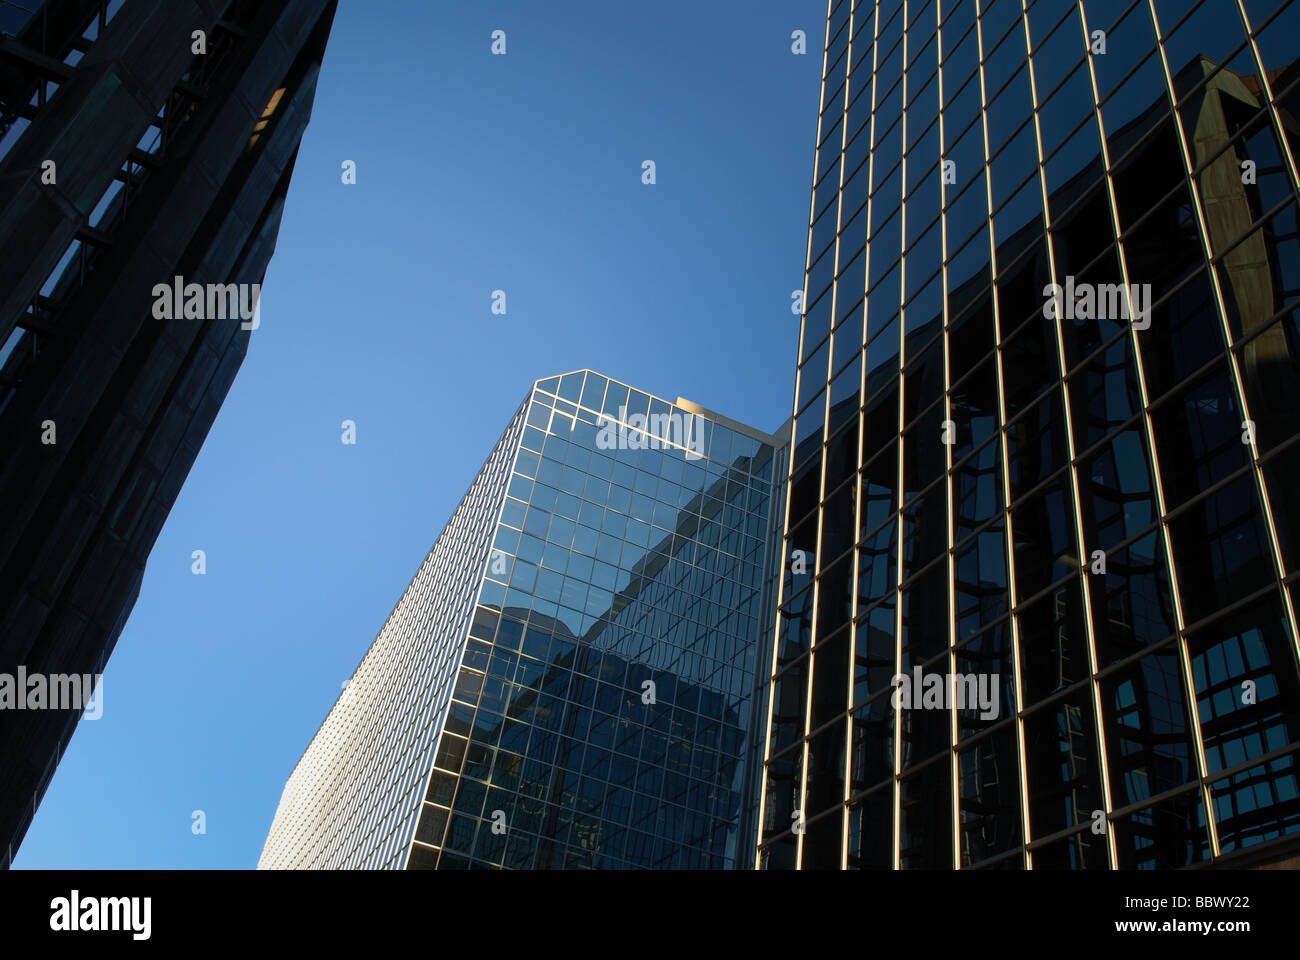 Moderni grattacieli di vetro raggiunge verso il cielo in un ambiente urbano. Foto Stock